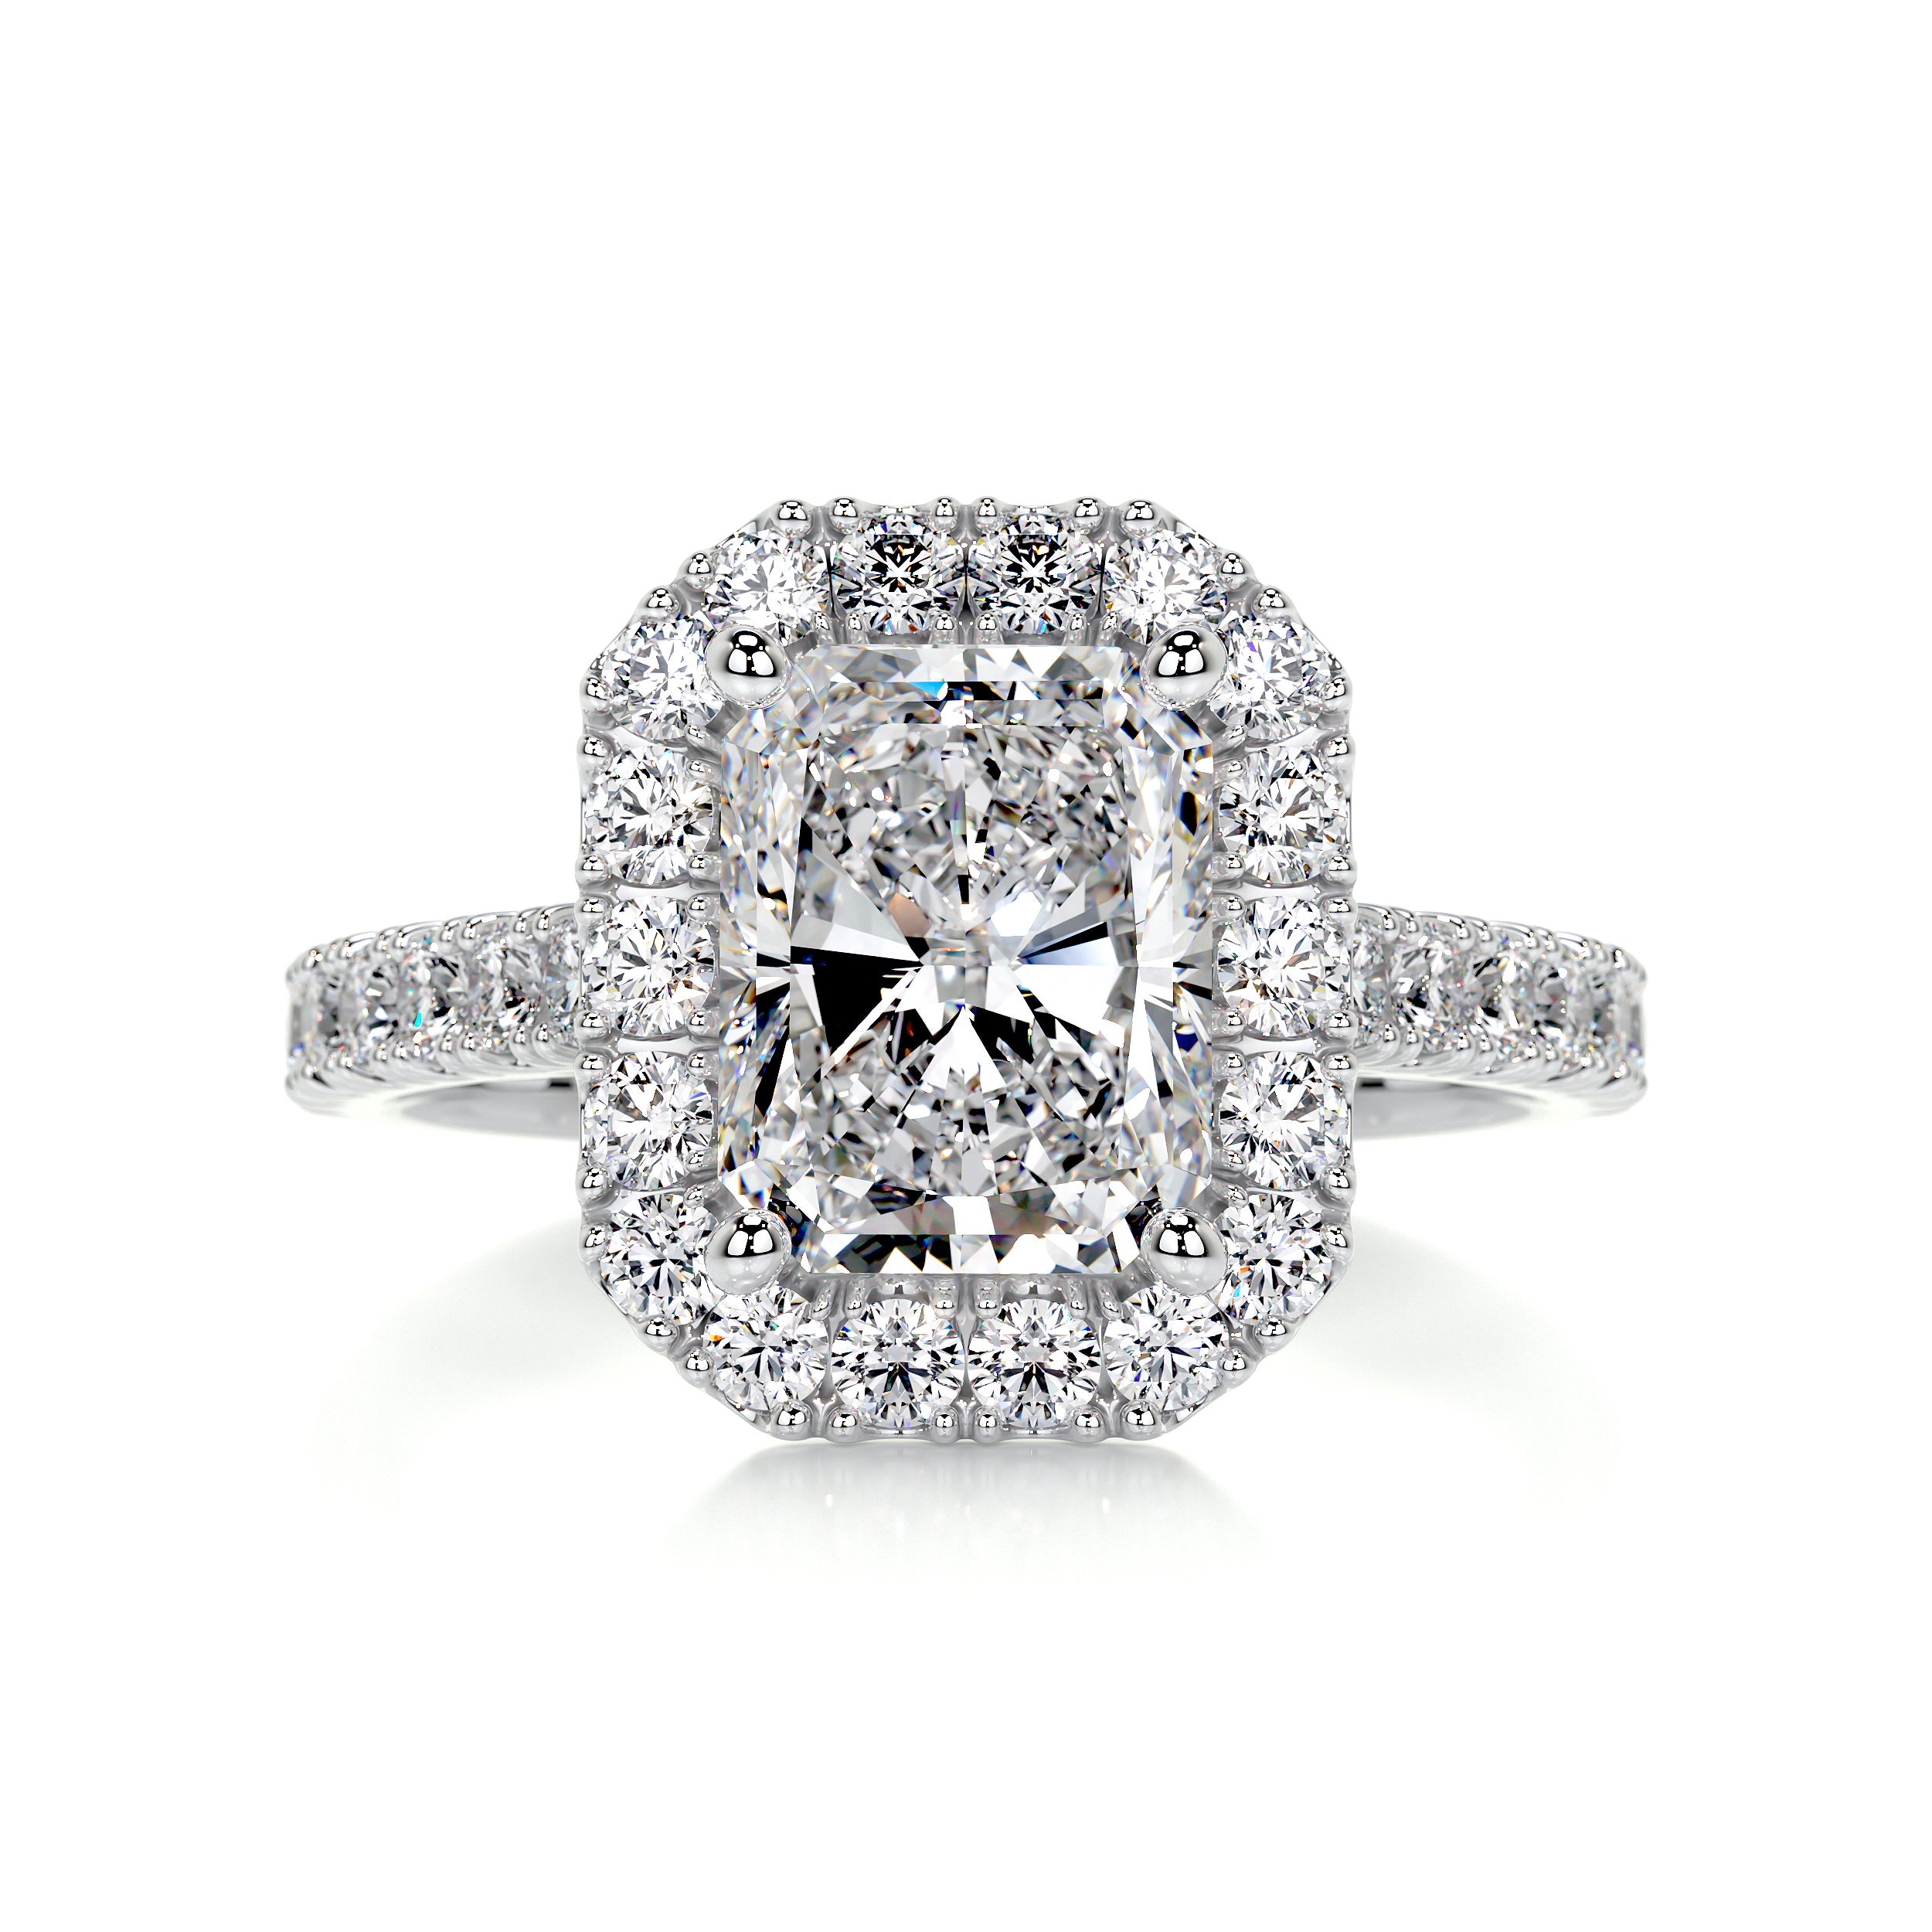 Andrea Moissanite & Diamonds Ring   (4.3 Carat) -14K White Gold